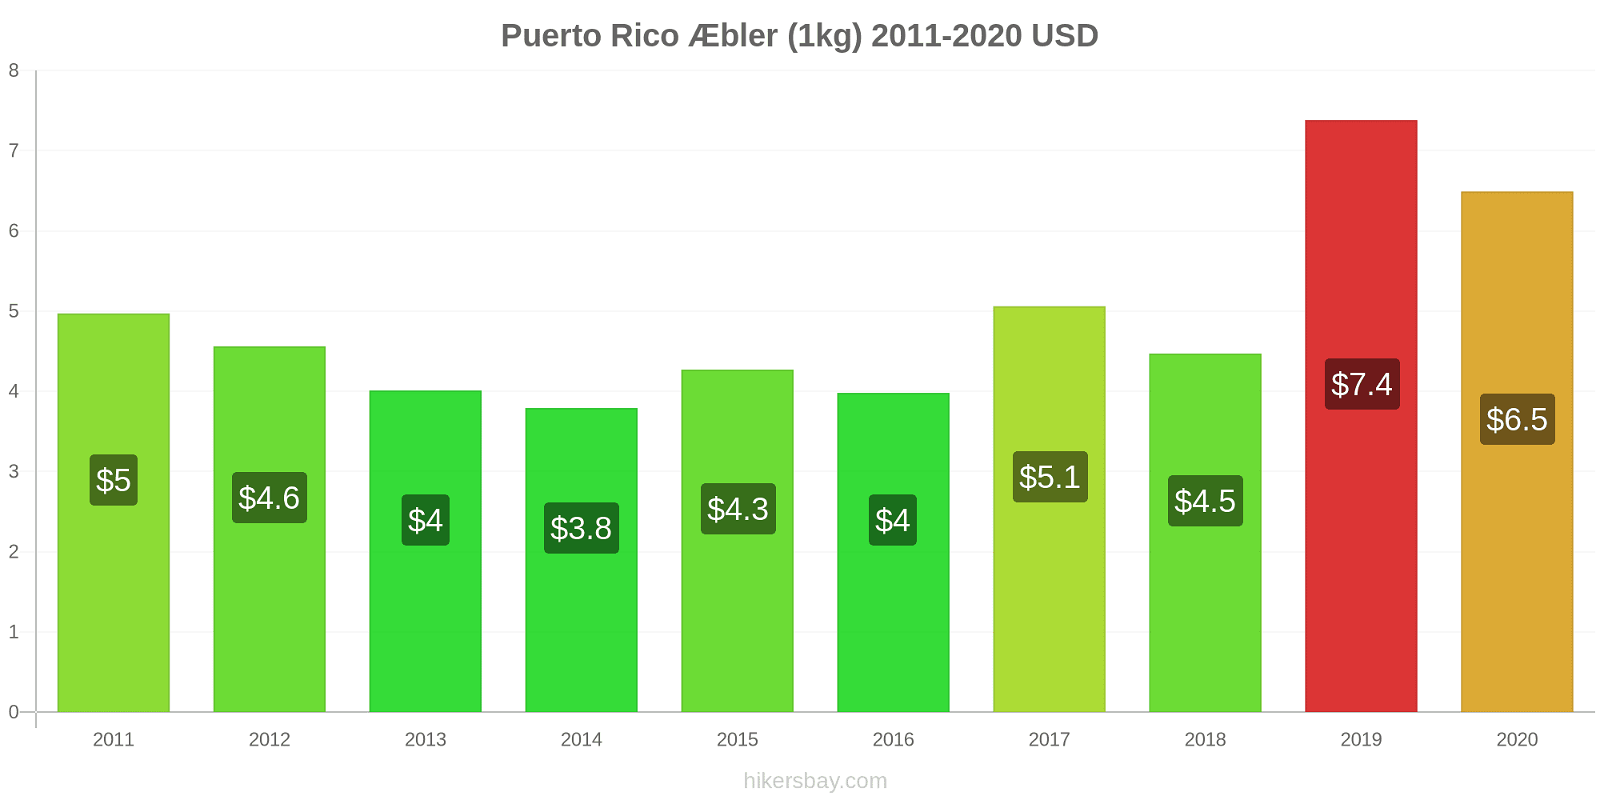 Puerto Rico prisændringer Æbler (1kg) hikersbay.com